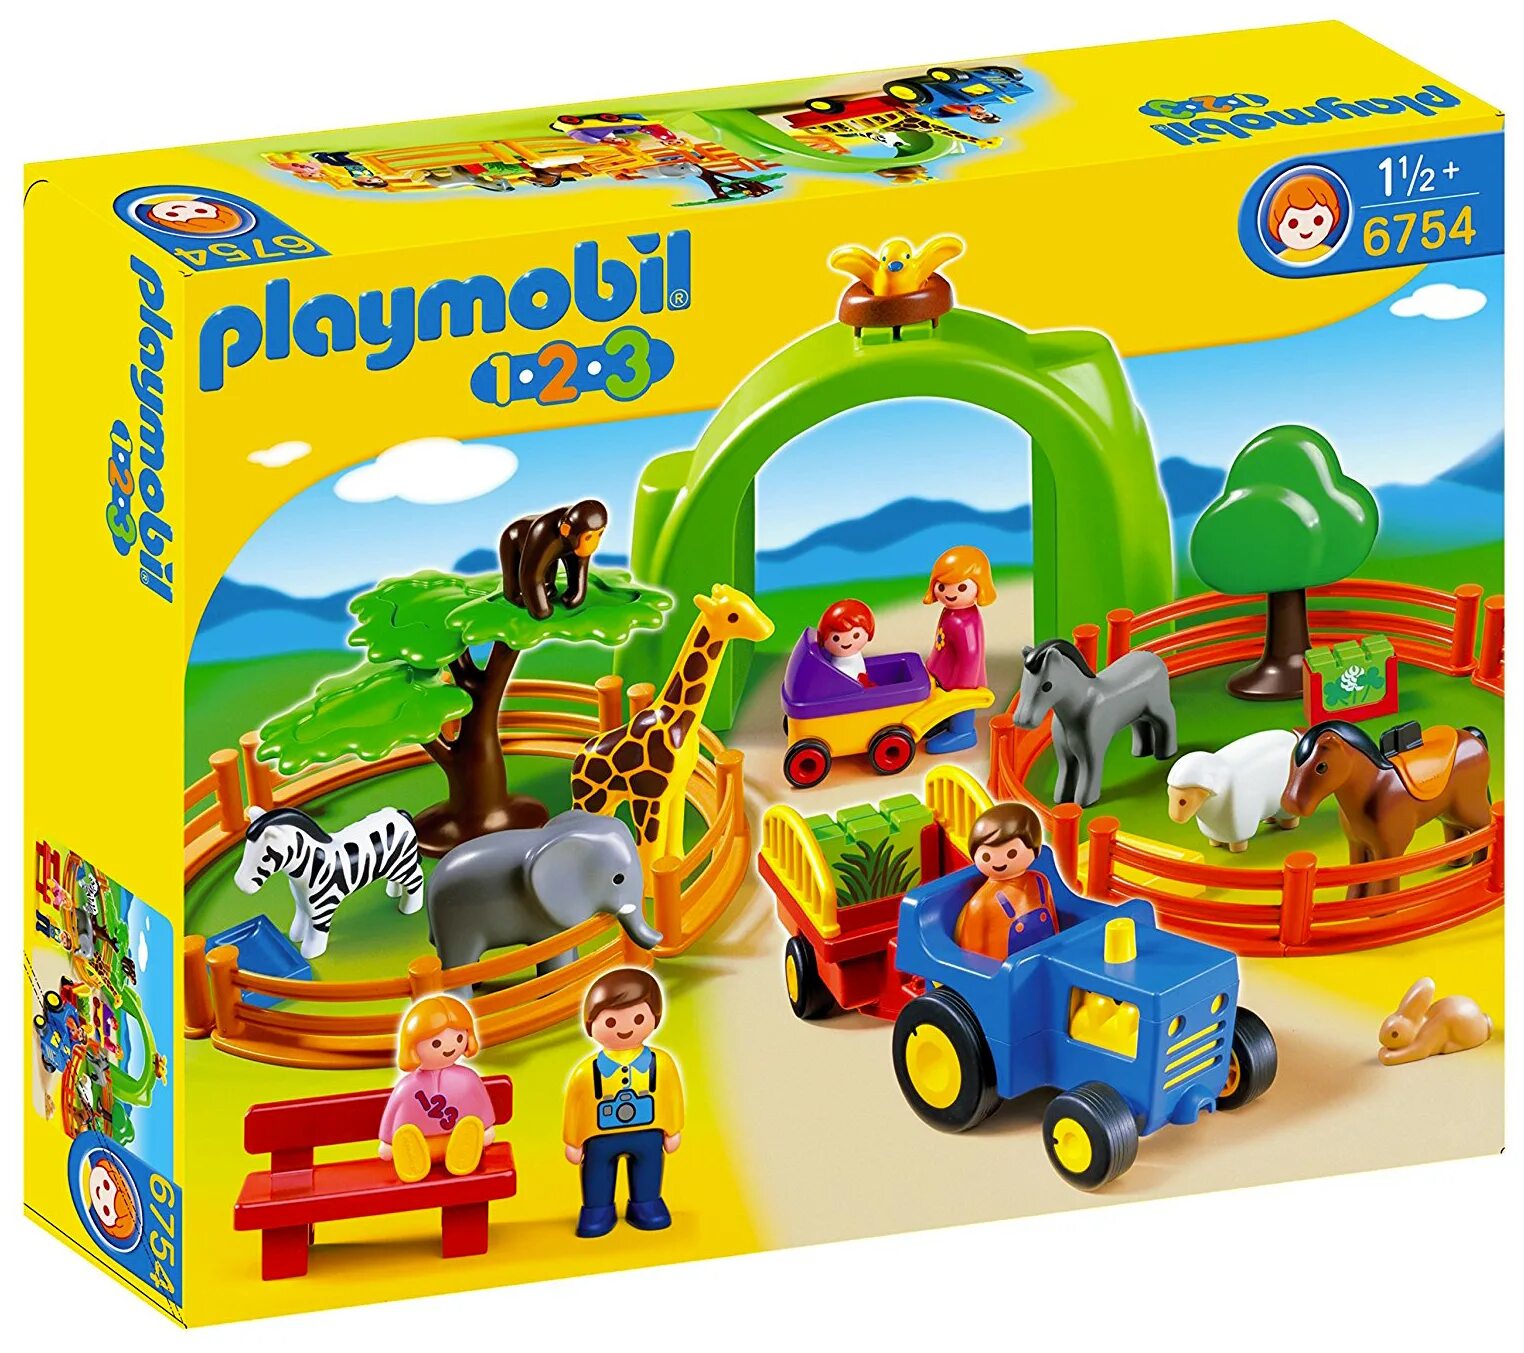 Playmobil Dragons 70038. Playmobil 4850. Конструктор Плеймобиль зоопарк. Playmobil 123. Набор зоопарк